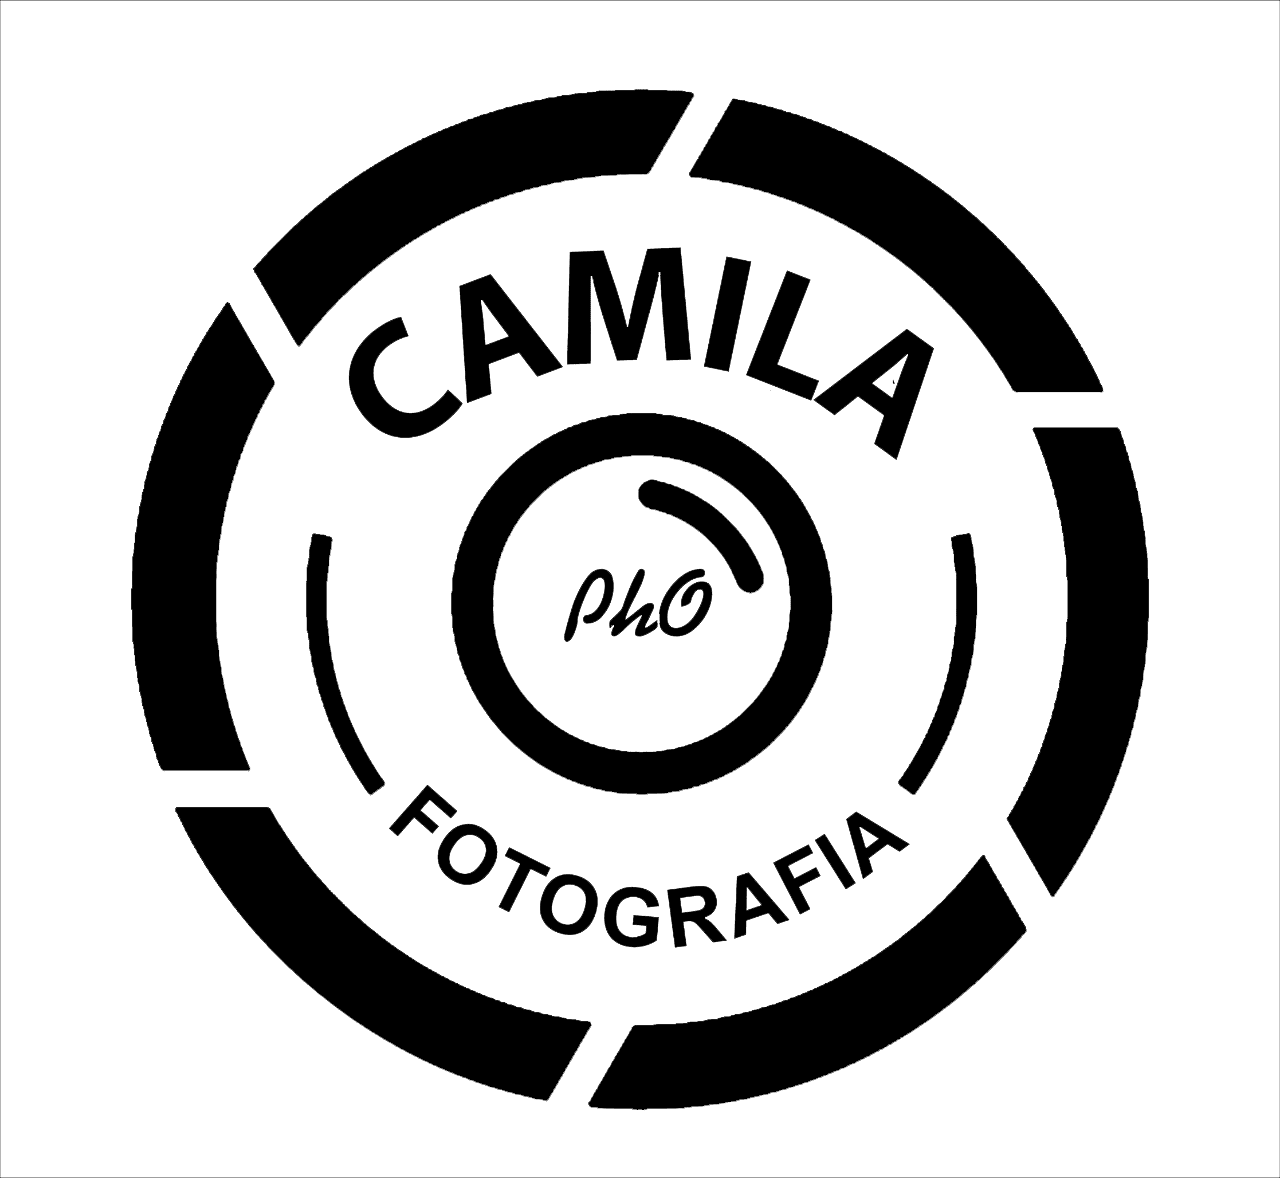 Camila PhO Fotografia